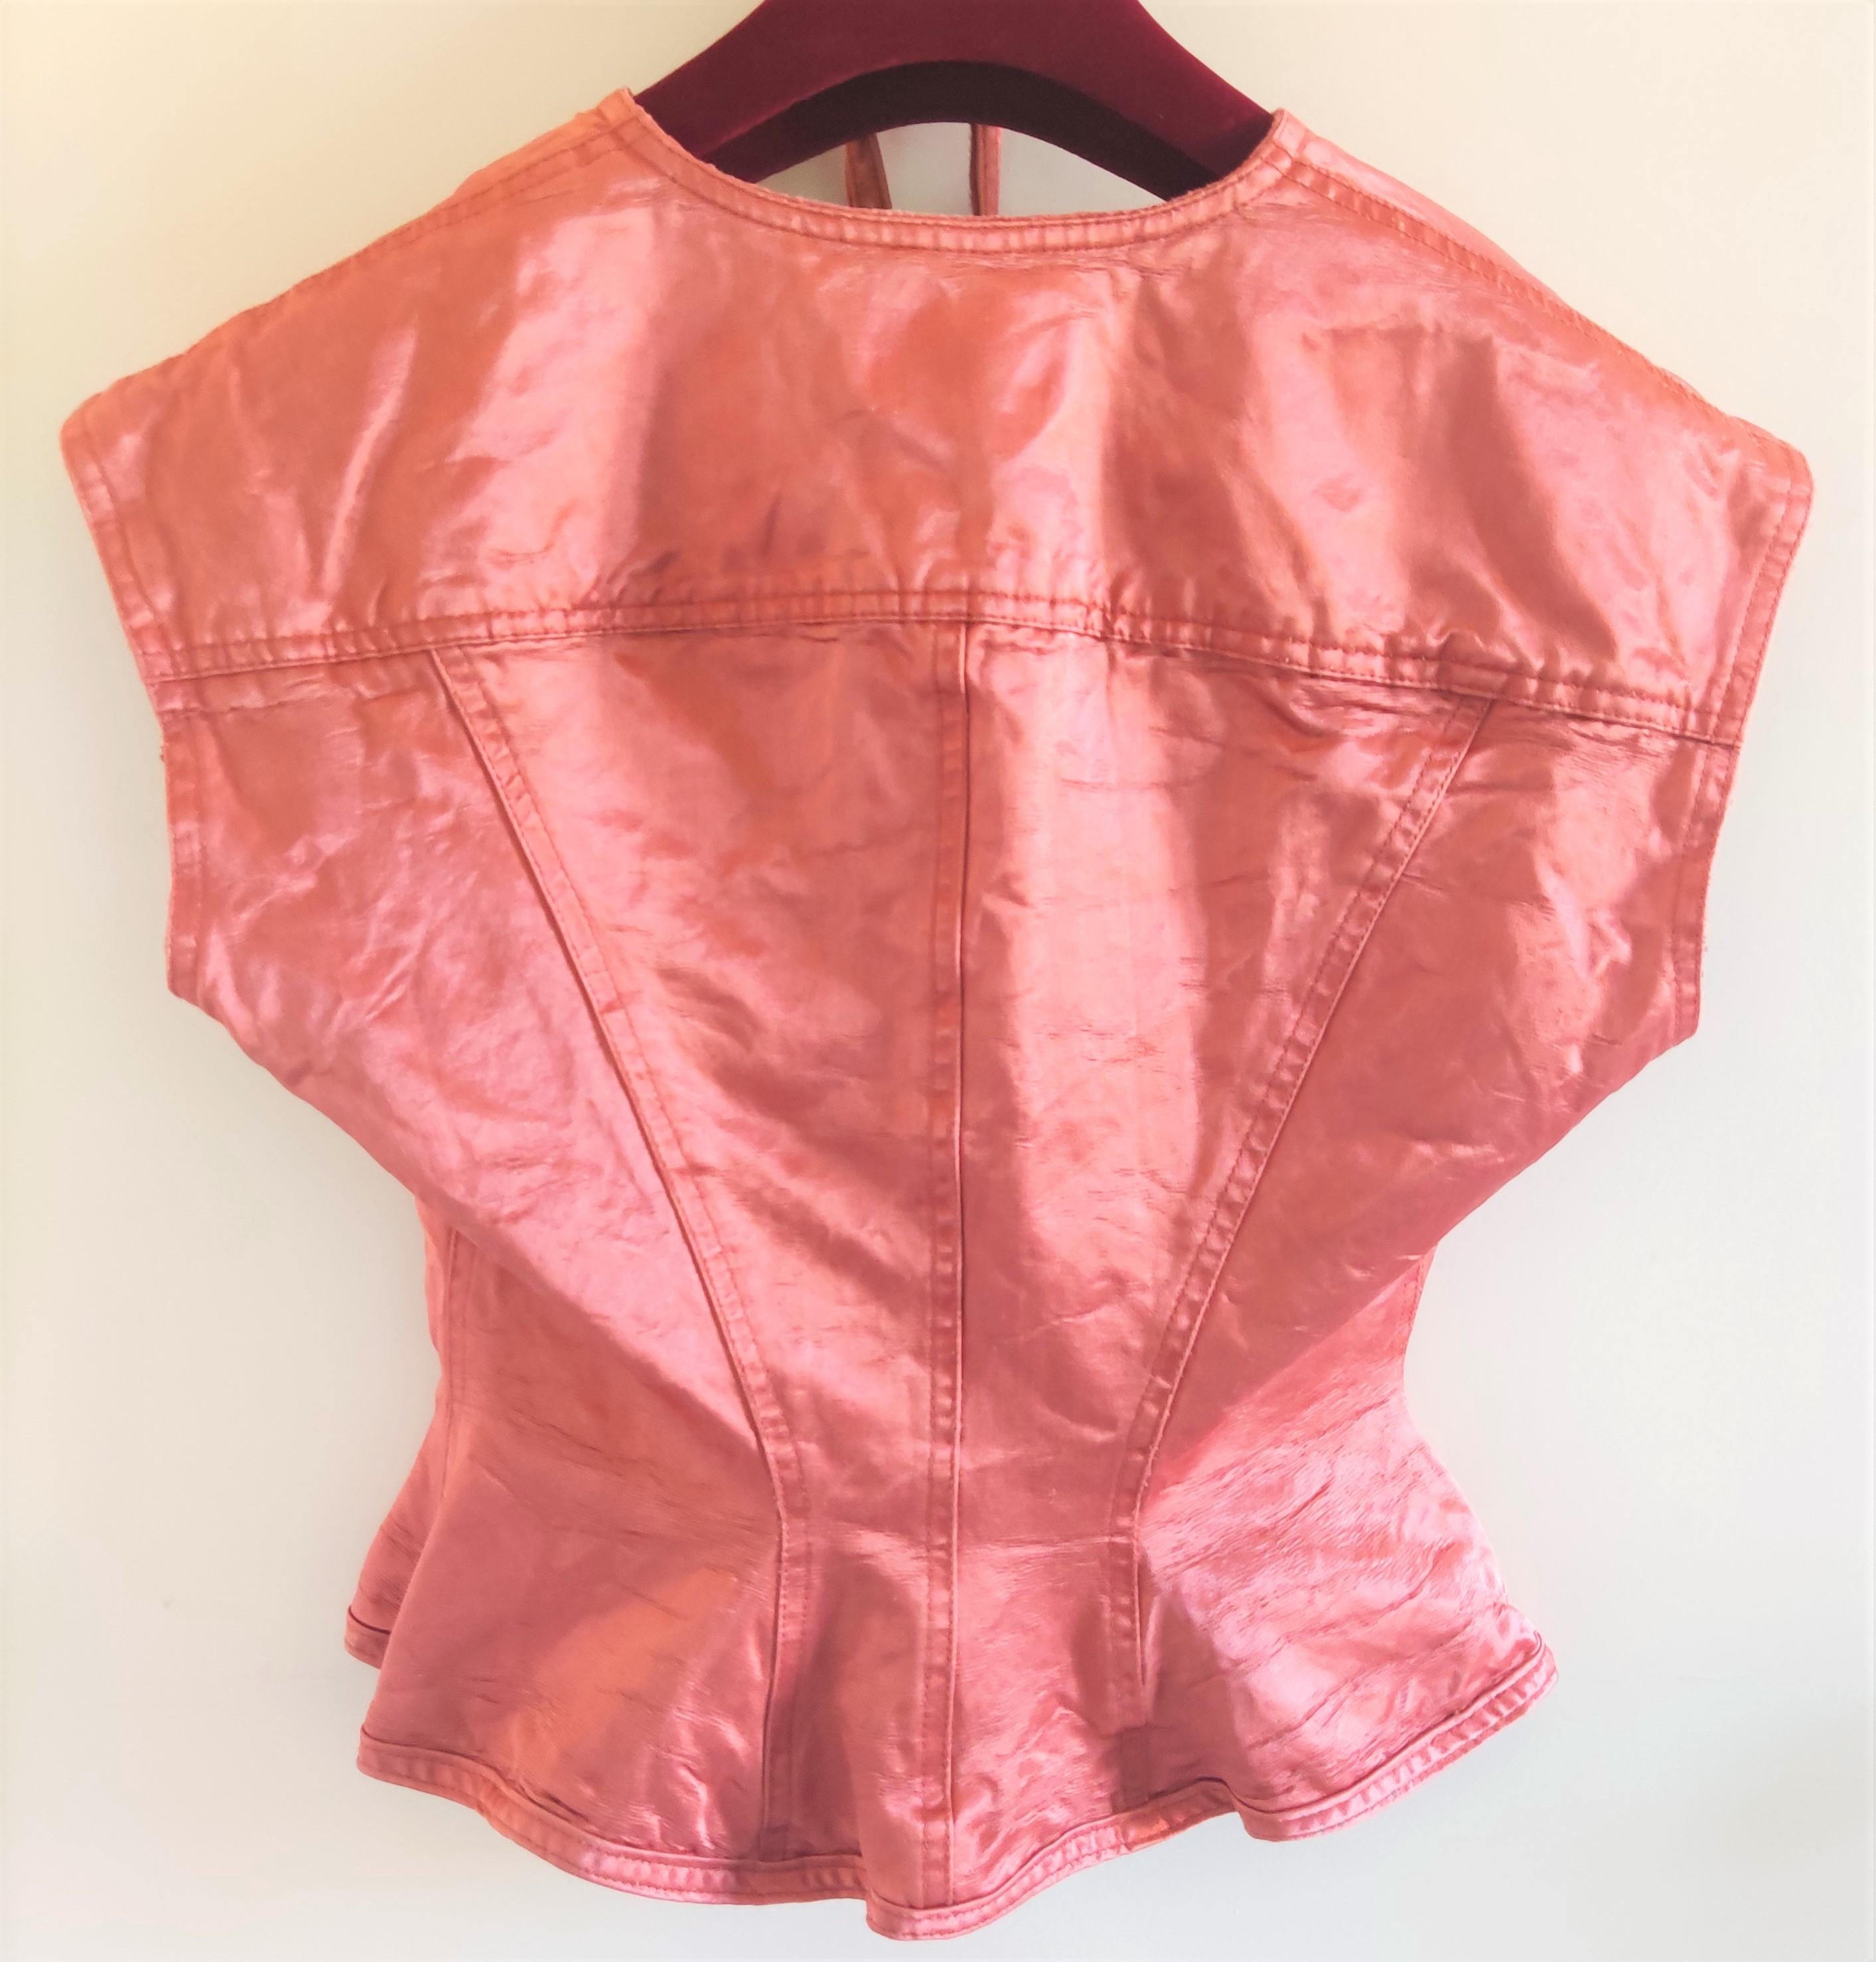 Jean Paul Gaultier Corset Bustier Pink Rose Vintage Lace Bondage Dress For Sale 6